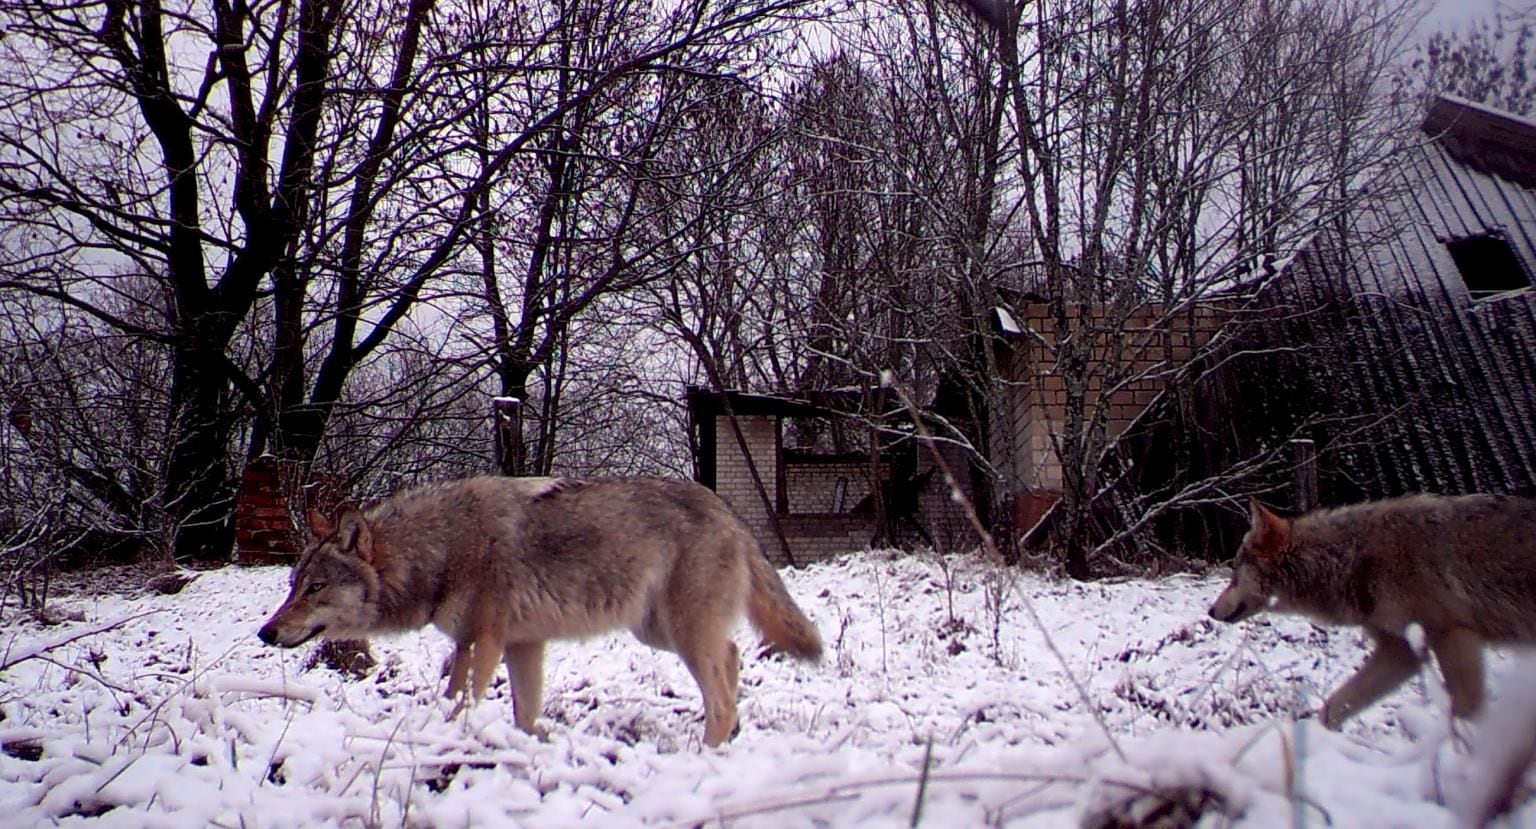 lobos mutantes de chernobyl han desarrollado resistencia al cáncer: estudio